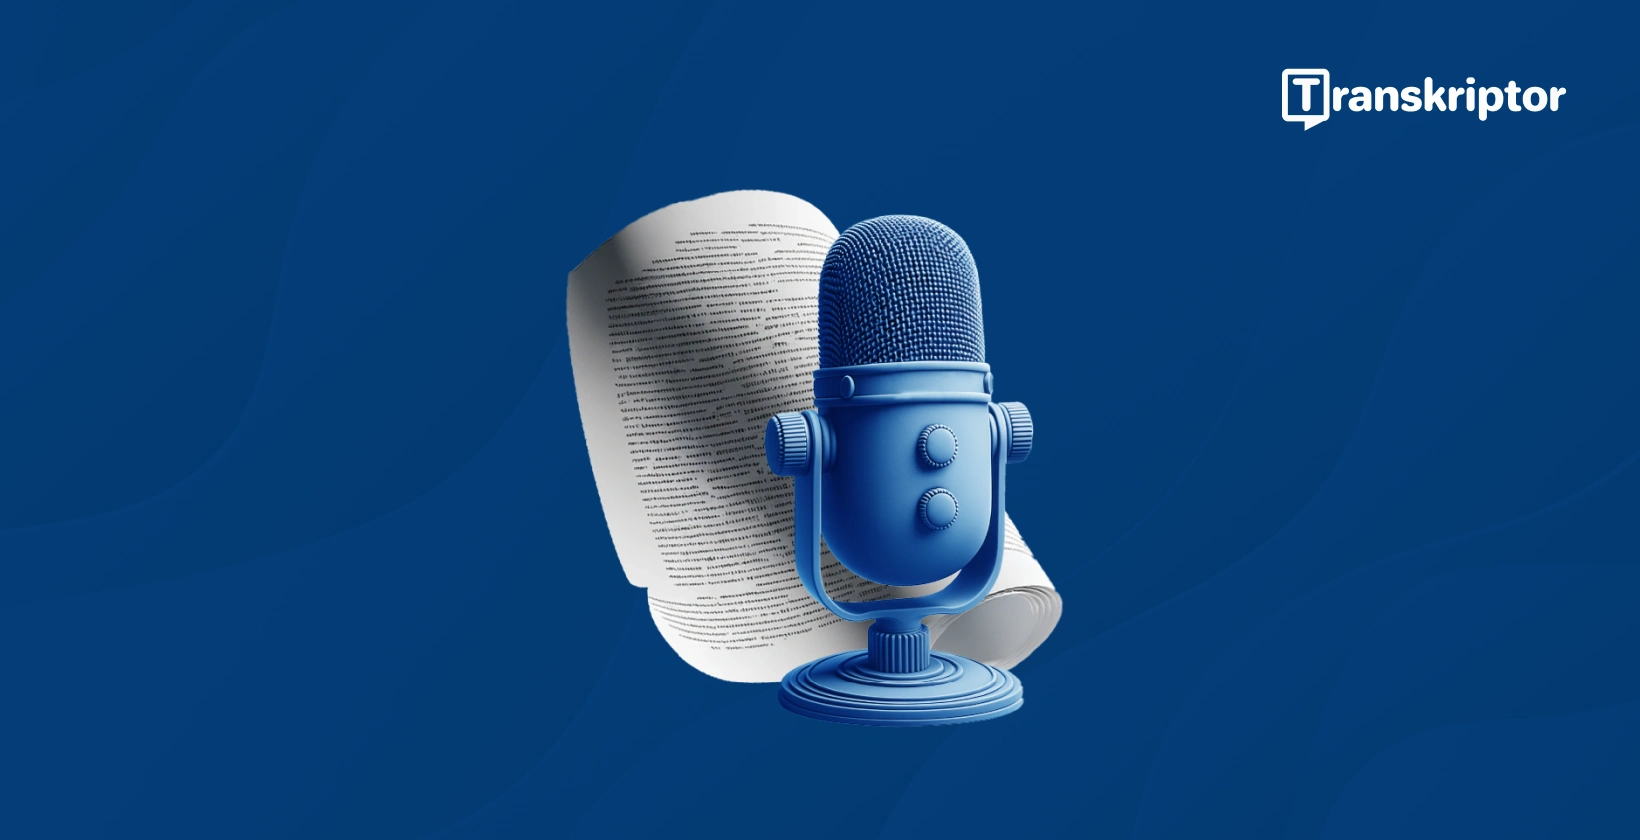 Menyalin audio kepada teks yang digambarkan oleh mikrofon biru dan dokumen teks.